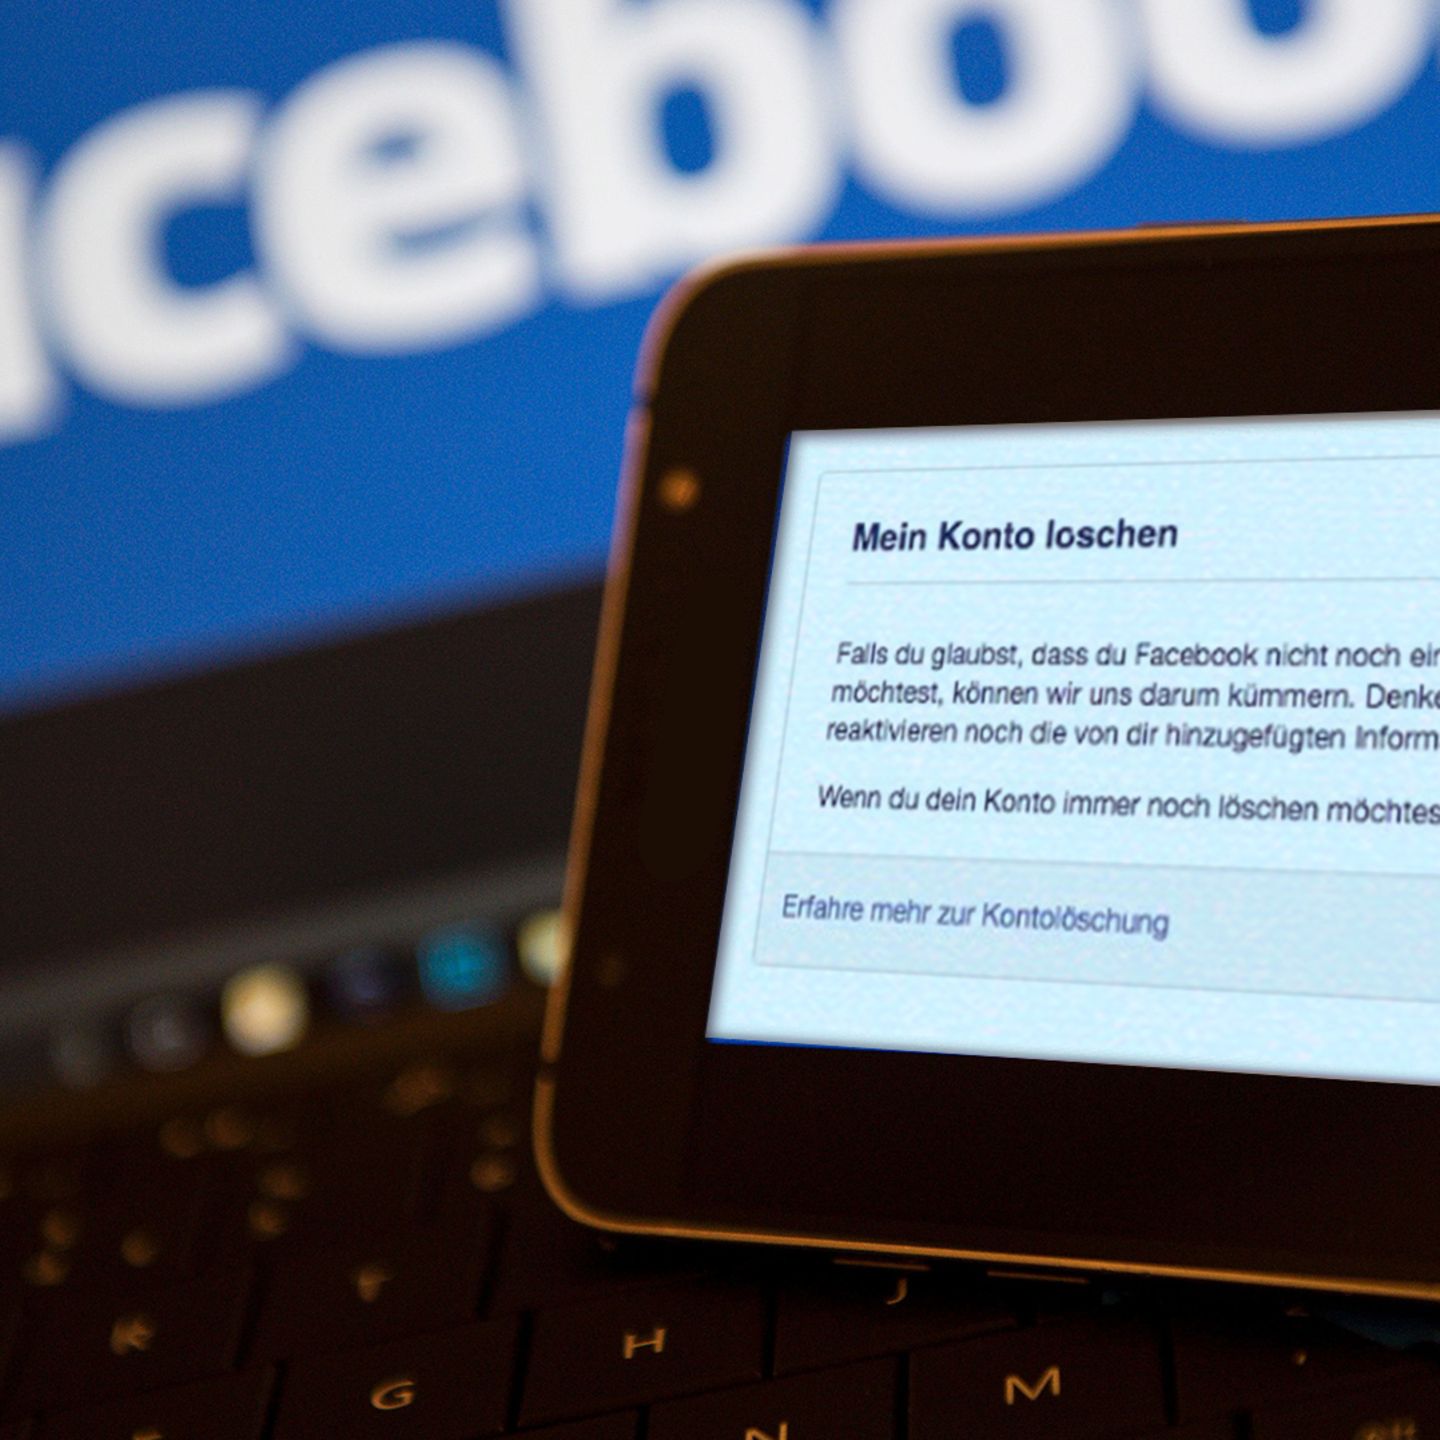 Facebook-Account löschen: Eine Schritt-für-Schritt-Anleitung